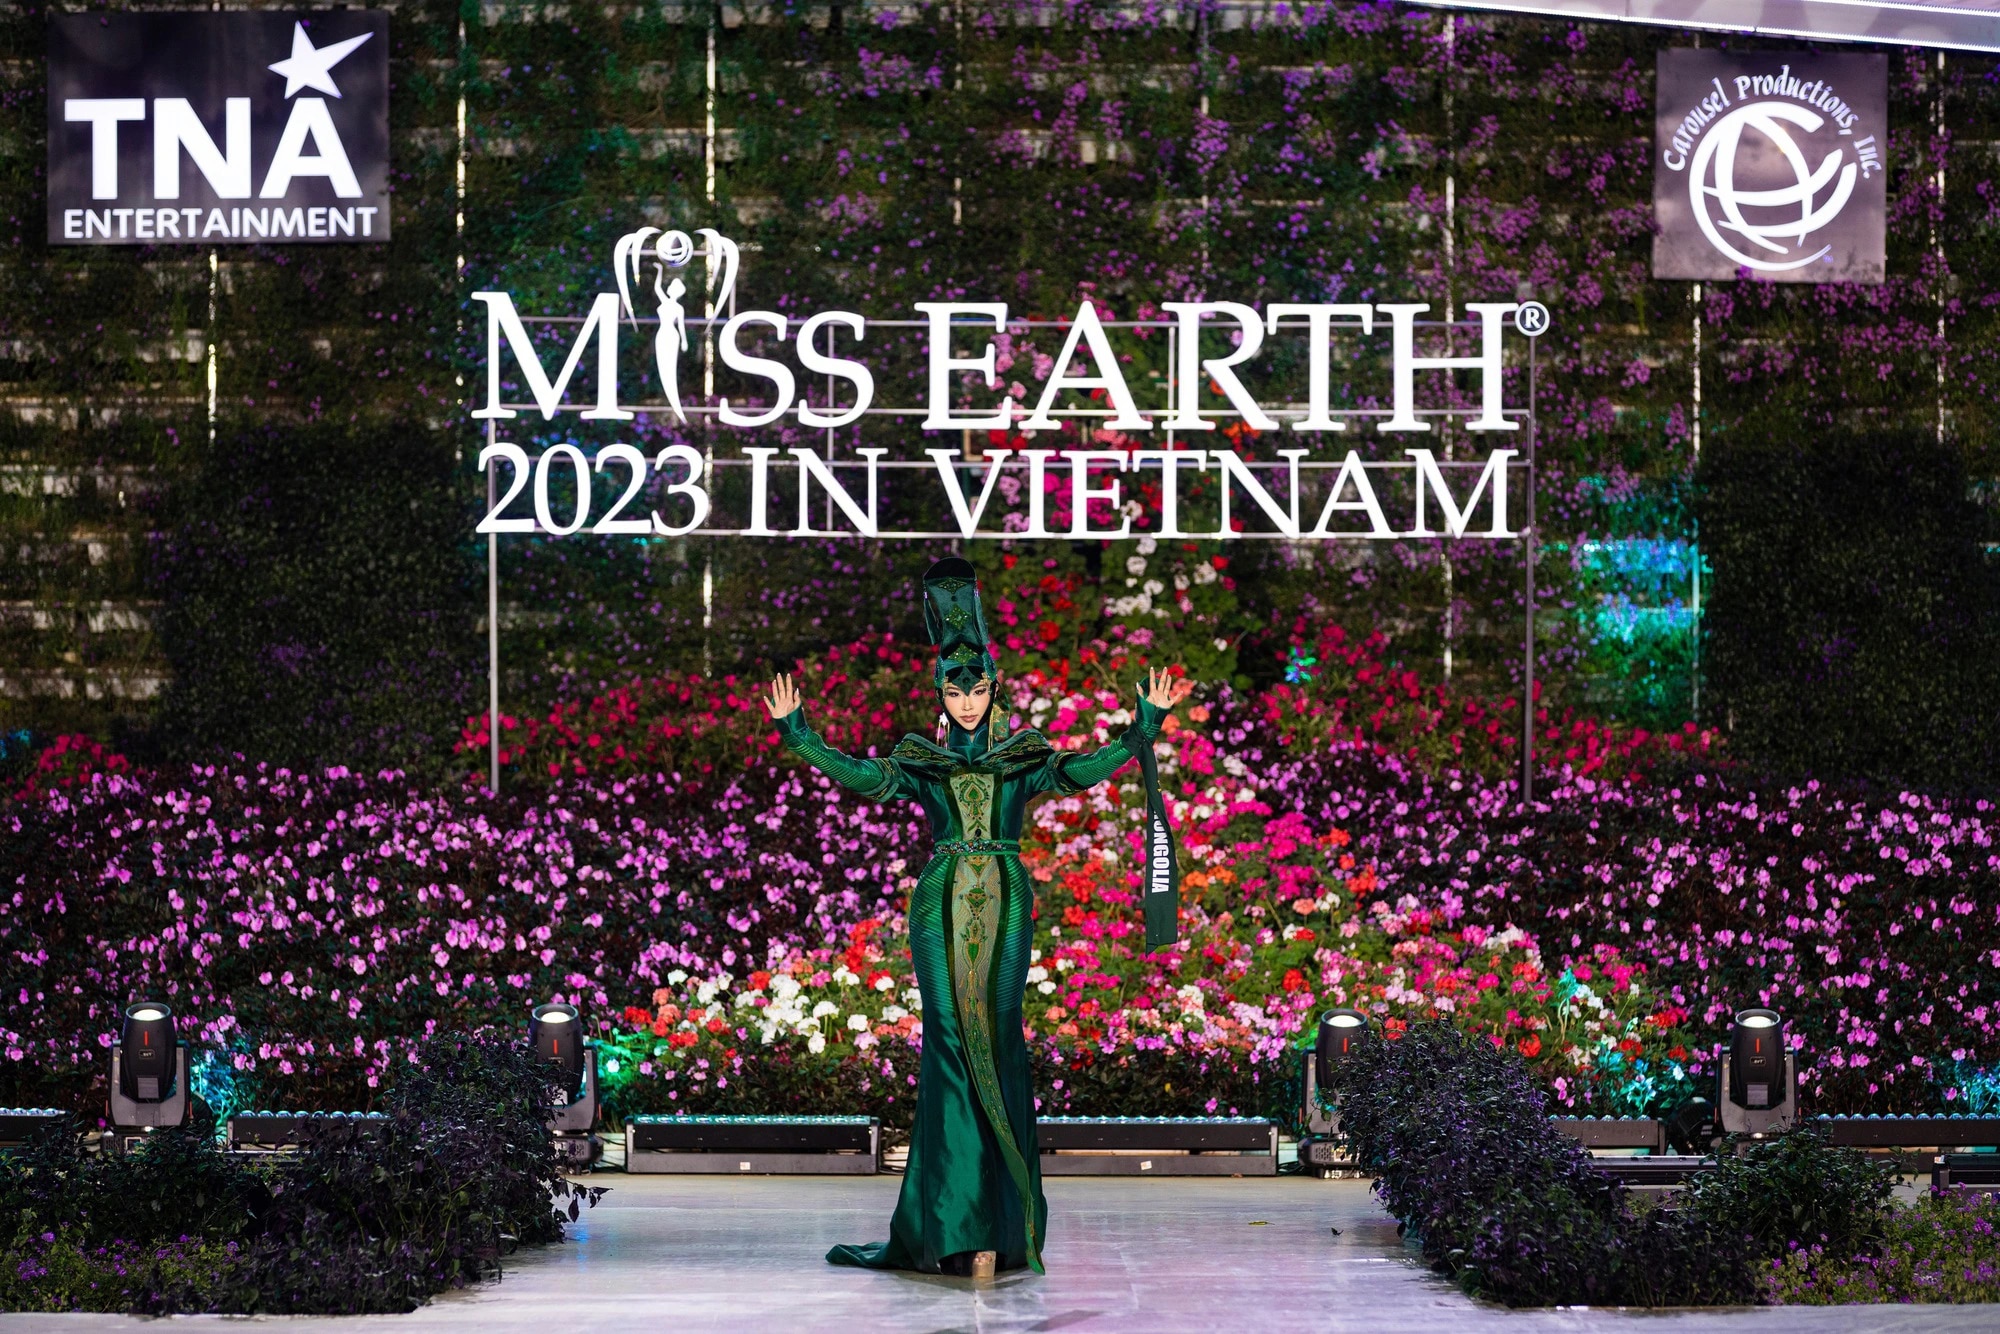 Bán kết Miss Earth 2023 màn trình Trang phục Dân tộc bùng nổ hình ảnh cỏ hoa, muông thú - Ảnh 17.